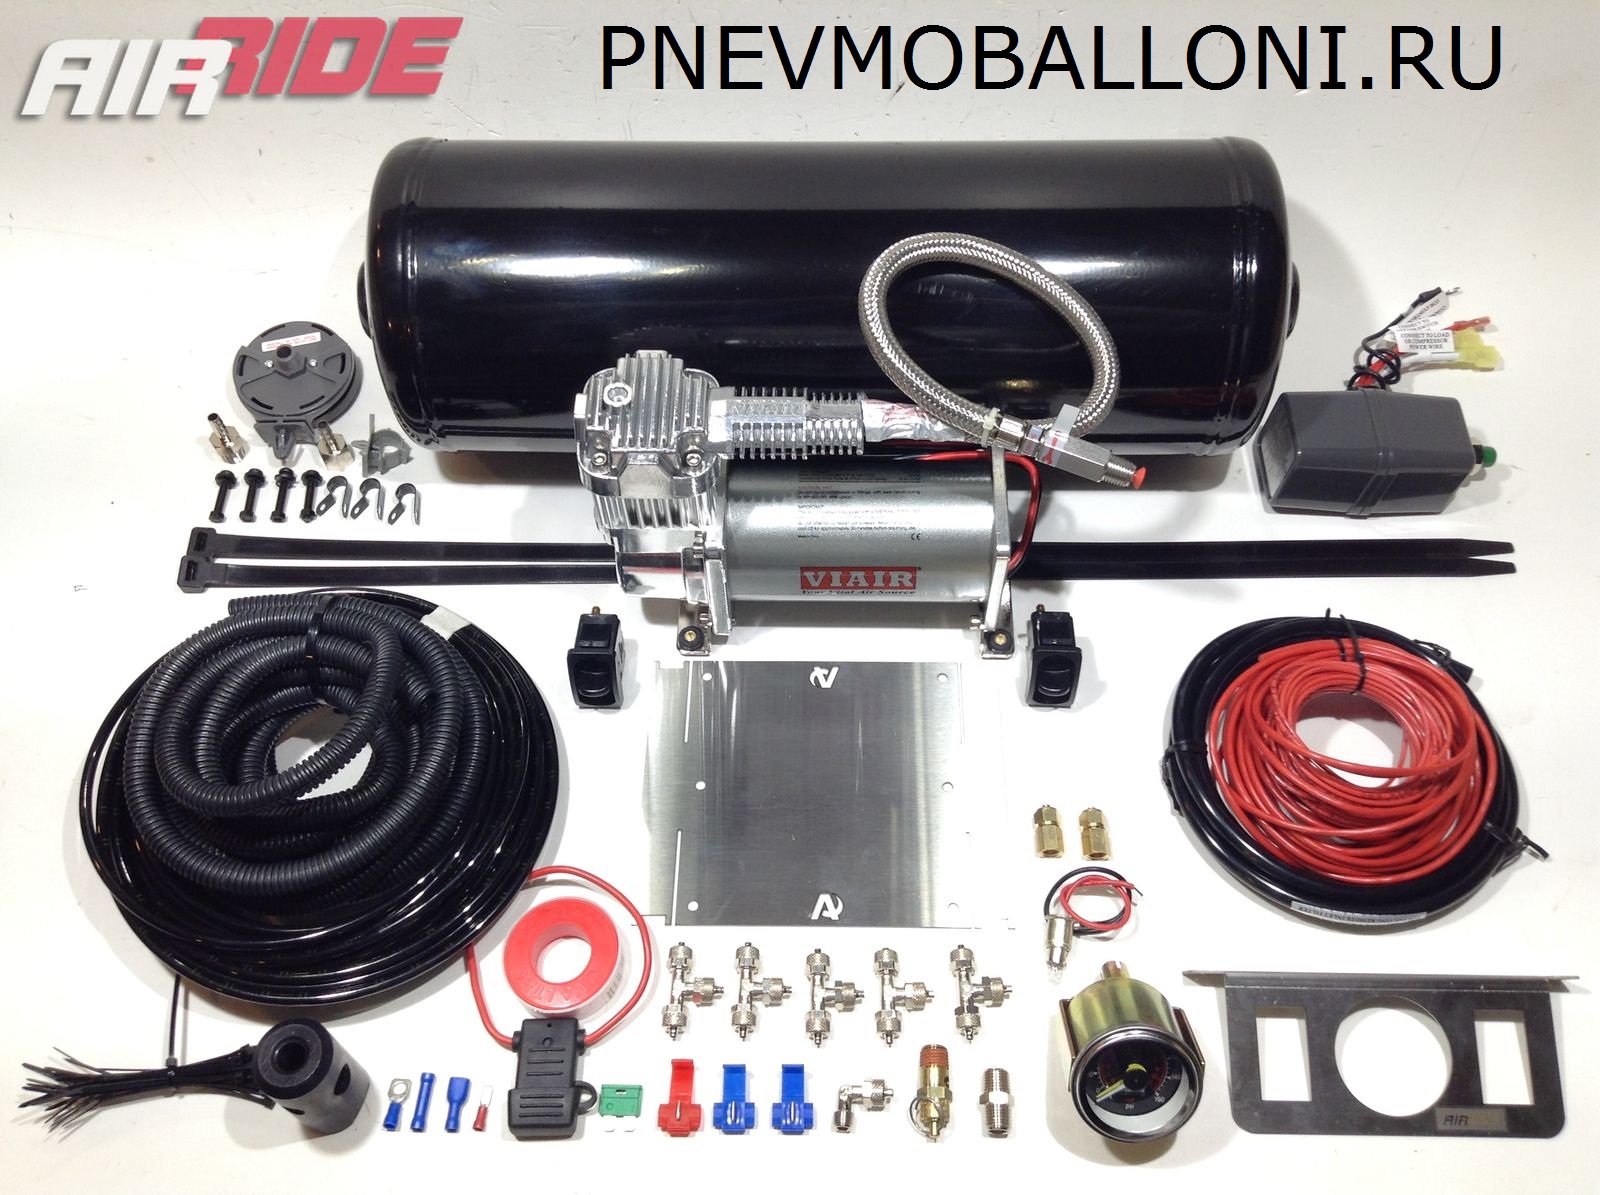 901006-20000-pnevmoballoni.ru3_2_.jpg